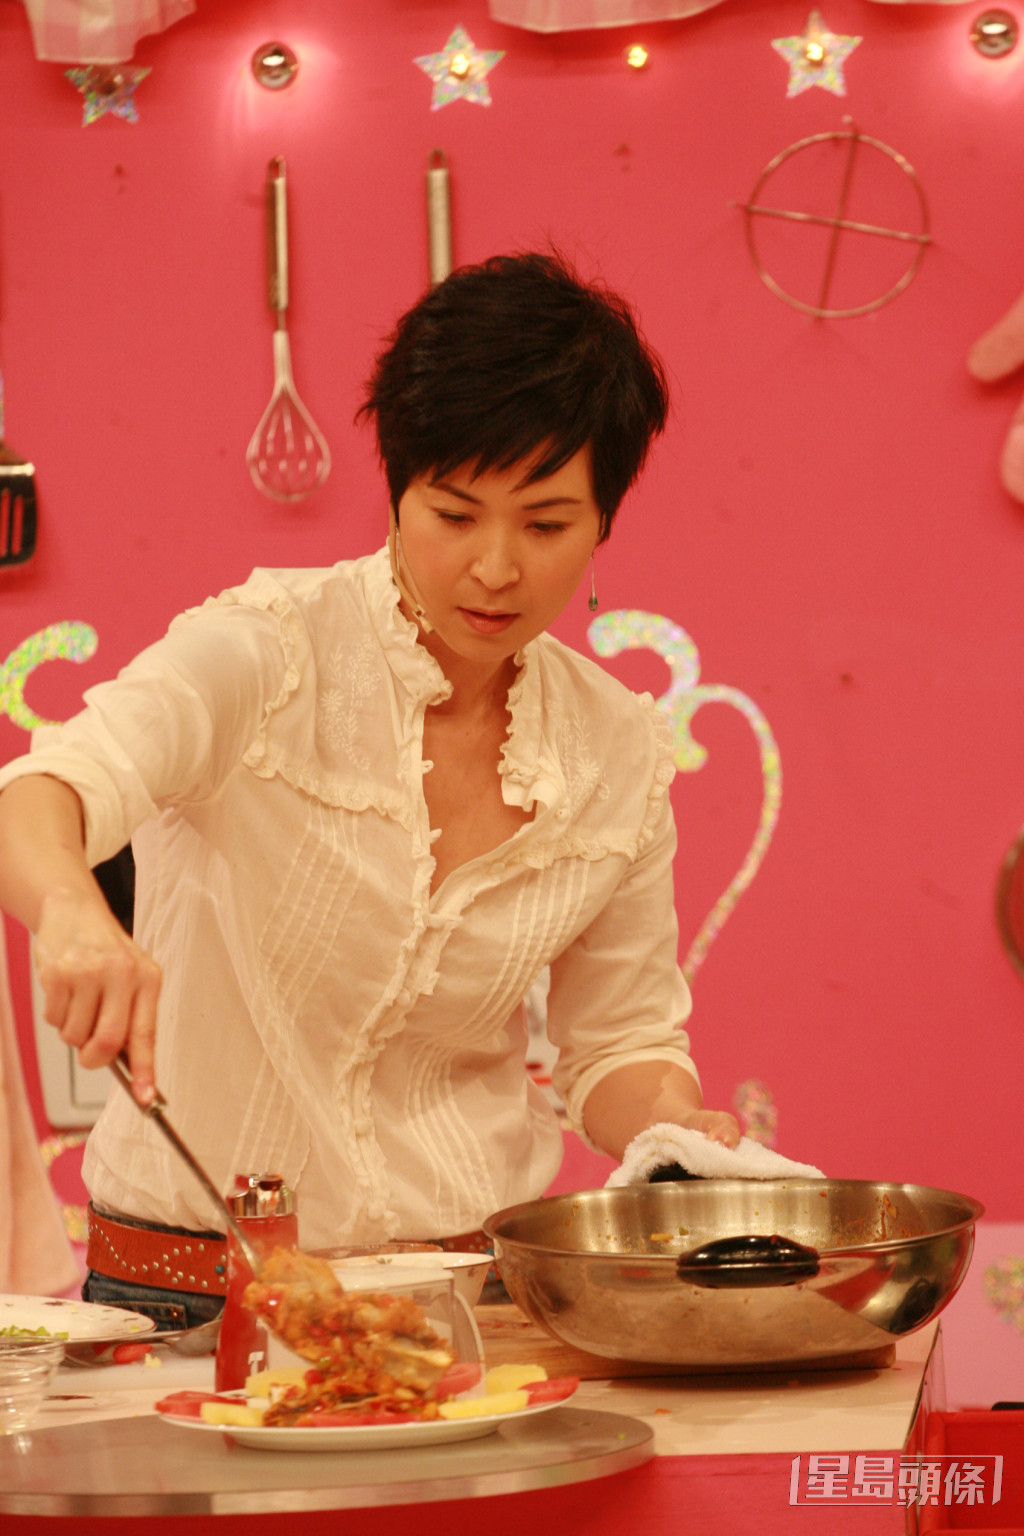  蘇玉華曾於綜藝節目《美女廚房》大展廚藝，因而被冠以「美女廚神」之稱。